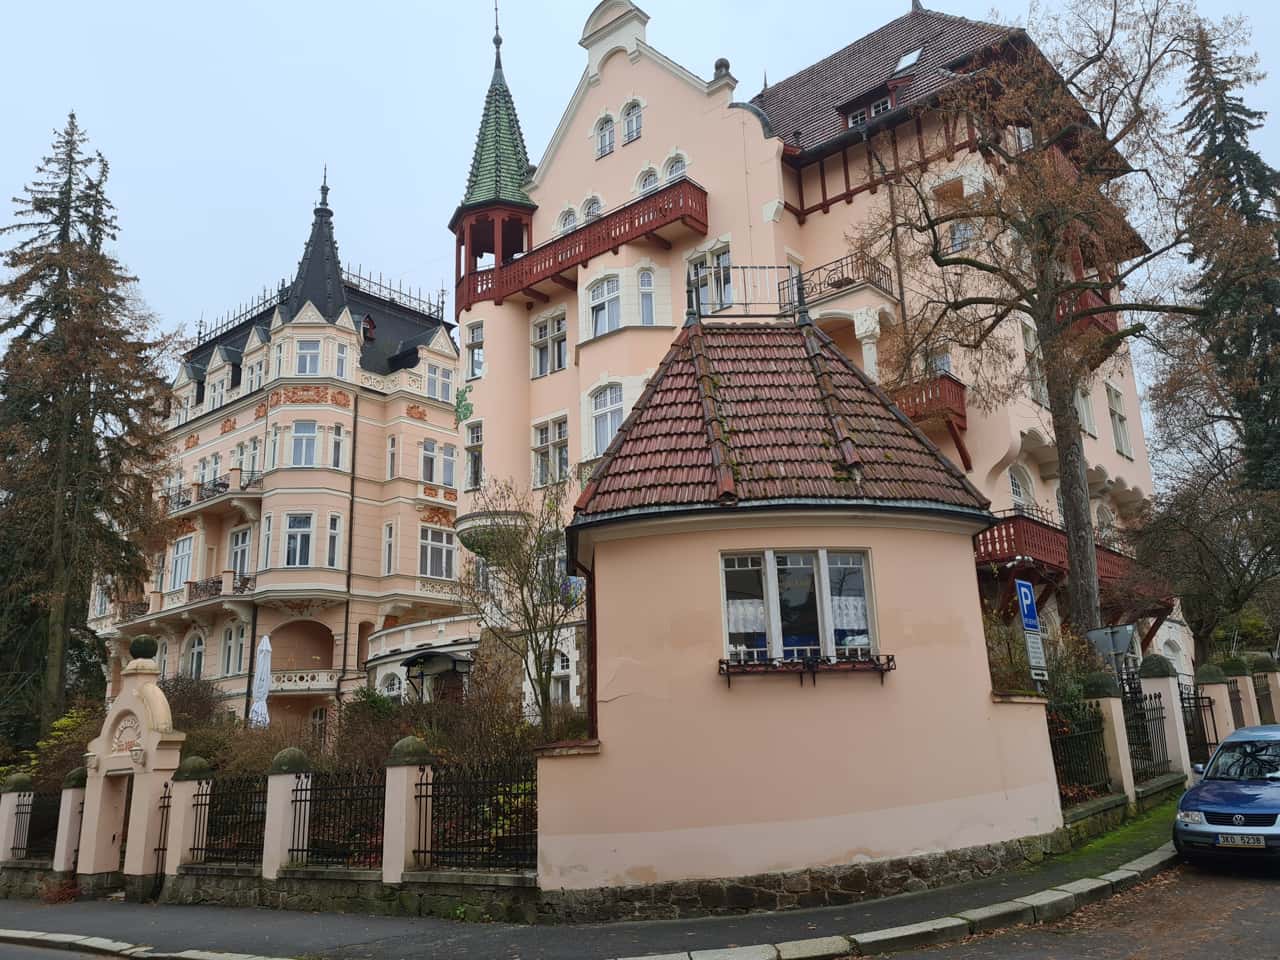 Villa im Viertel Westend im tschechischen Heilbad Karlsbad